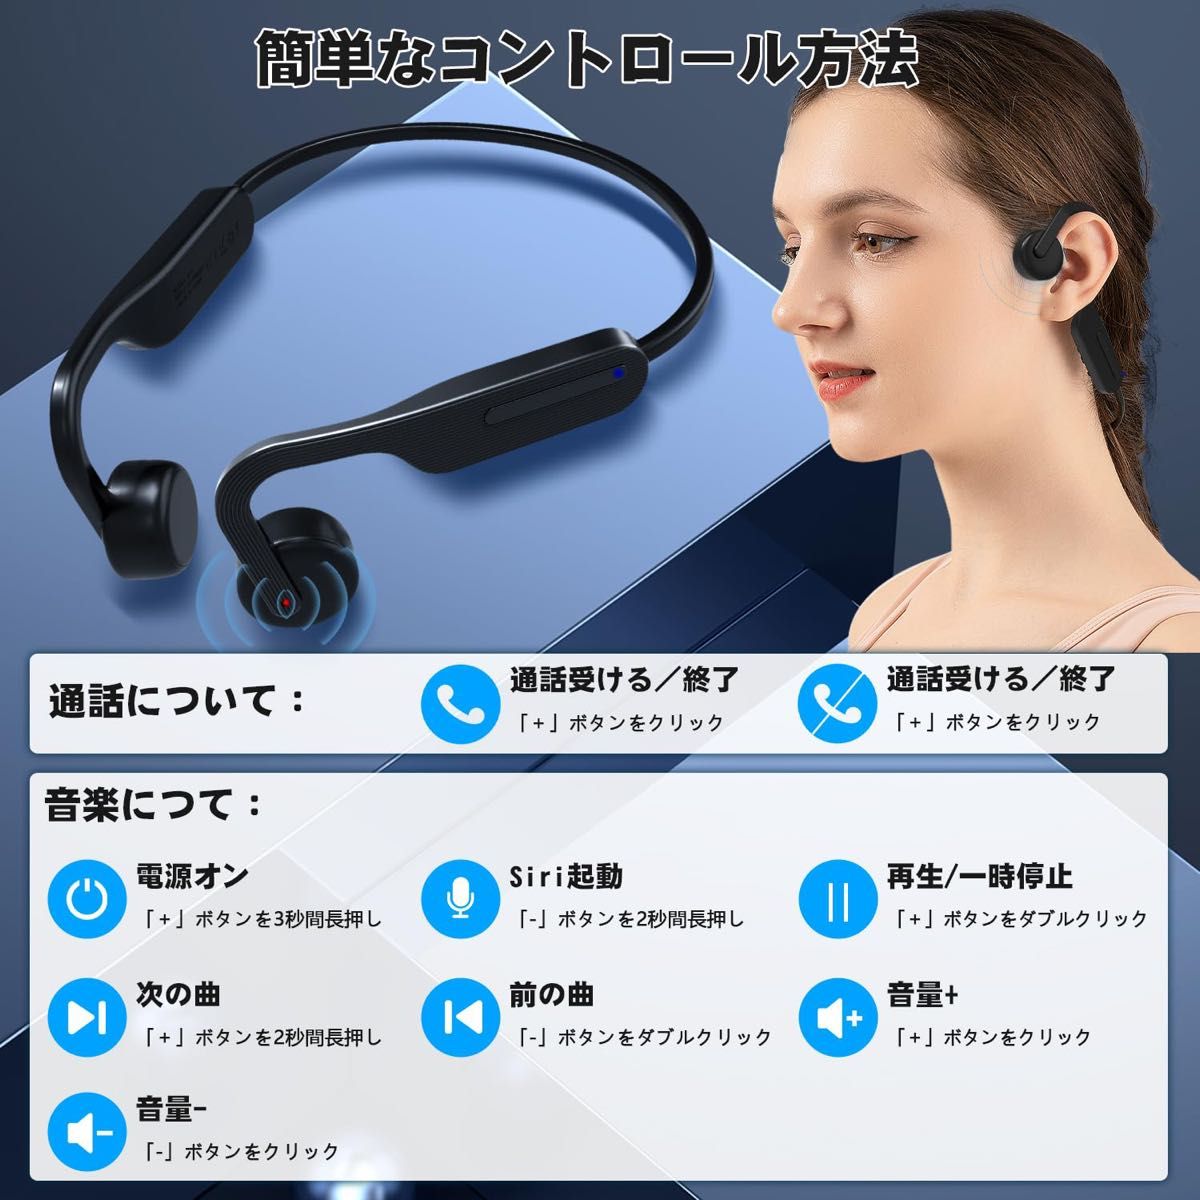 超軽量 骨伝導 ワイヤレスイヤホン 耳掛け式Bluetooth5.3 防水 2台同時ペアリング可能 ノイズキャンセリング